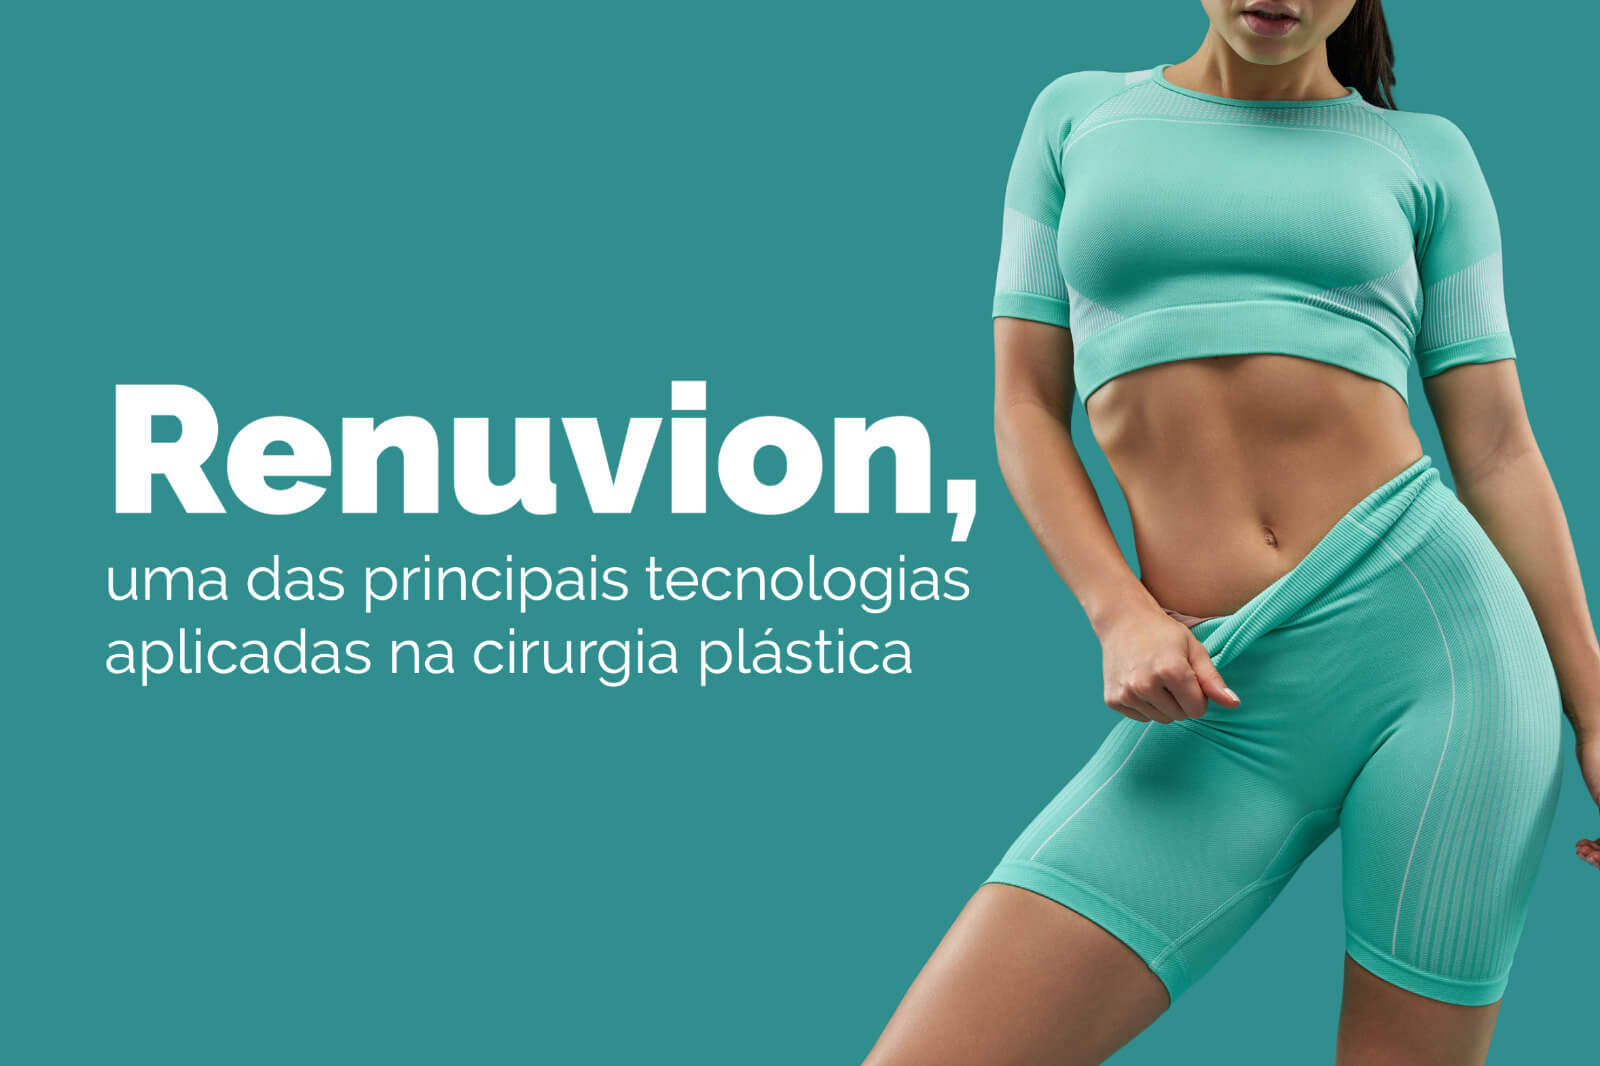 Renuvion, uma das principais tecnologias aplicadas na cirurgia plástica